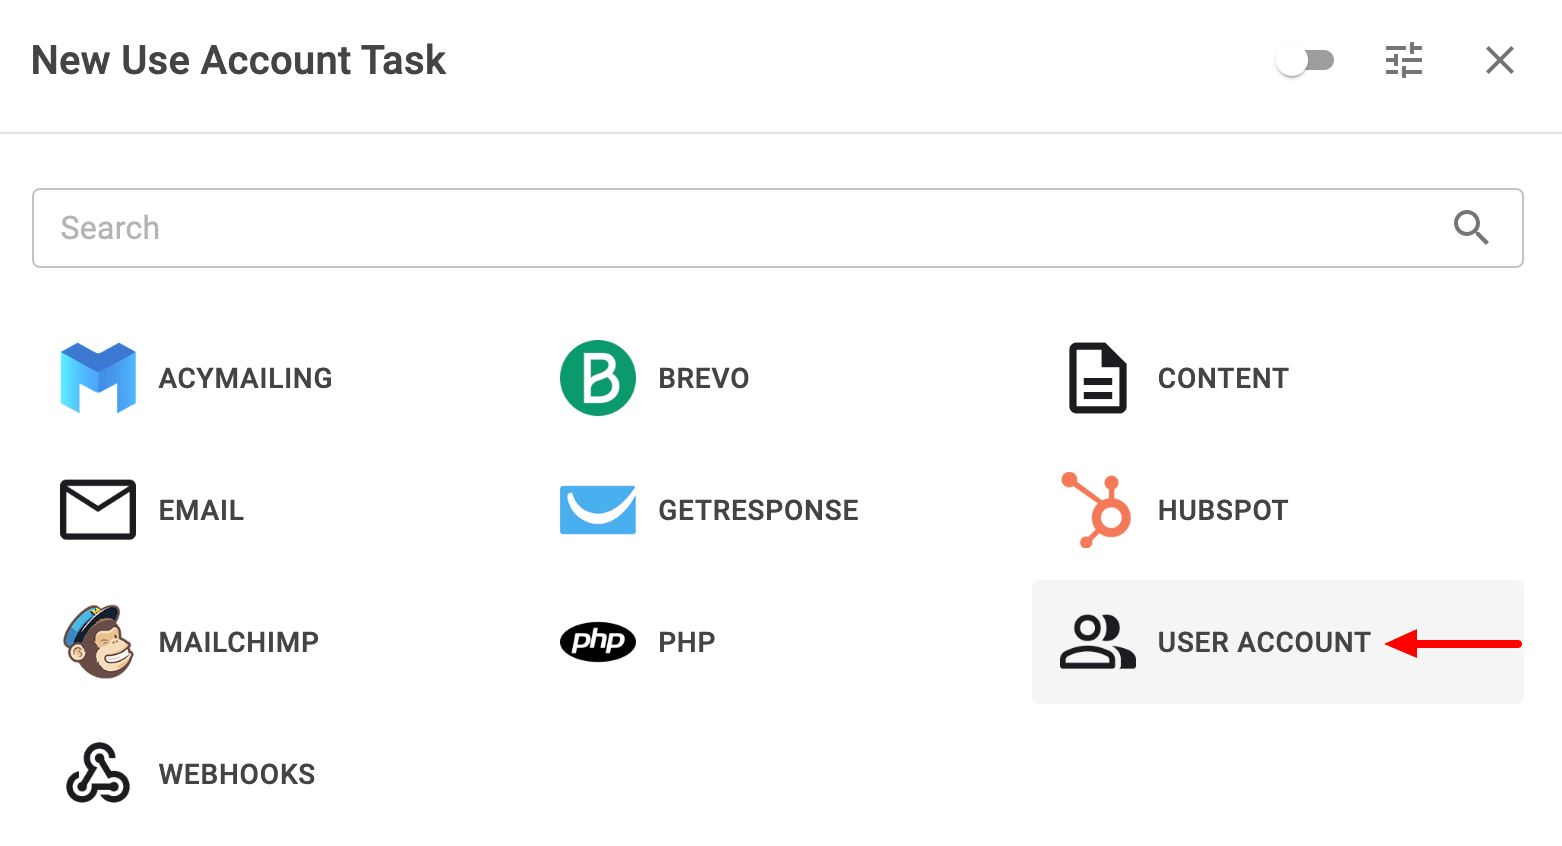 Select PHP Task